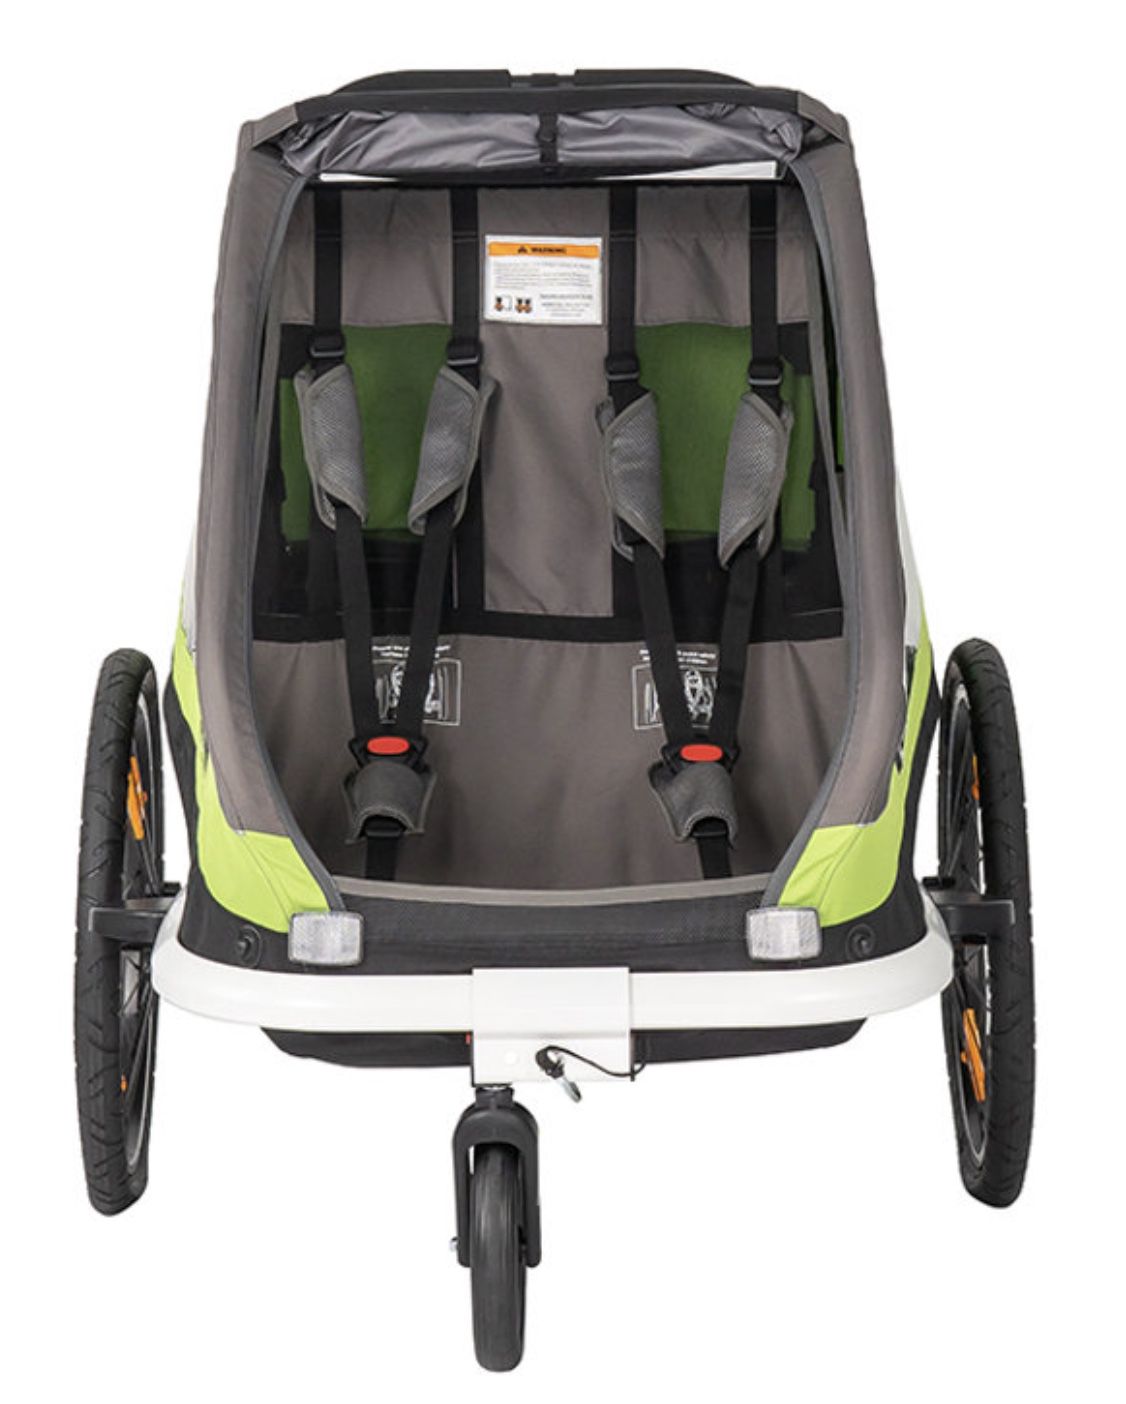 hamax Traveller Kinderfahrradanhänger inkl. Deichsel und Buggyrad für 205€ (statt 278€) + 8 fache Babypunkte